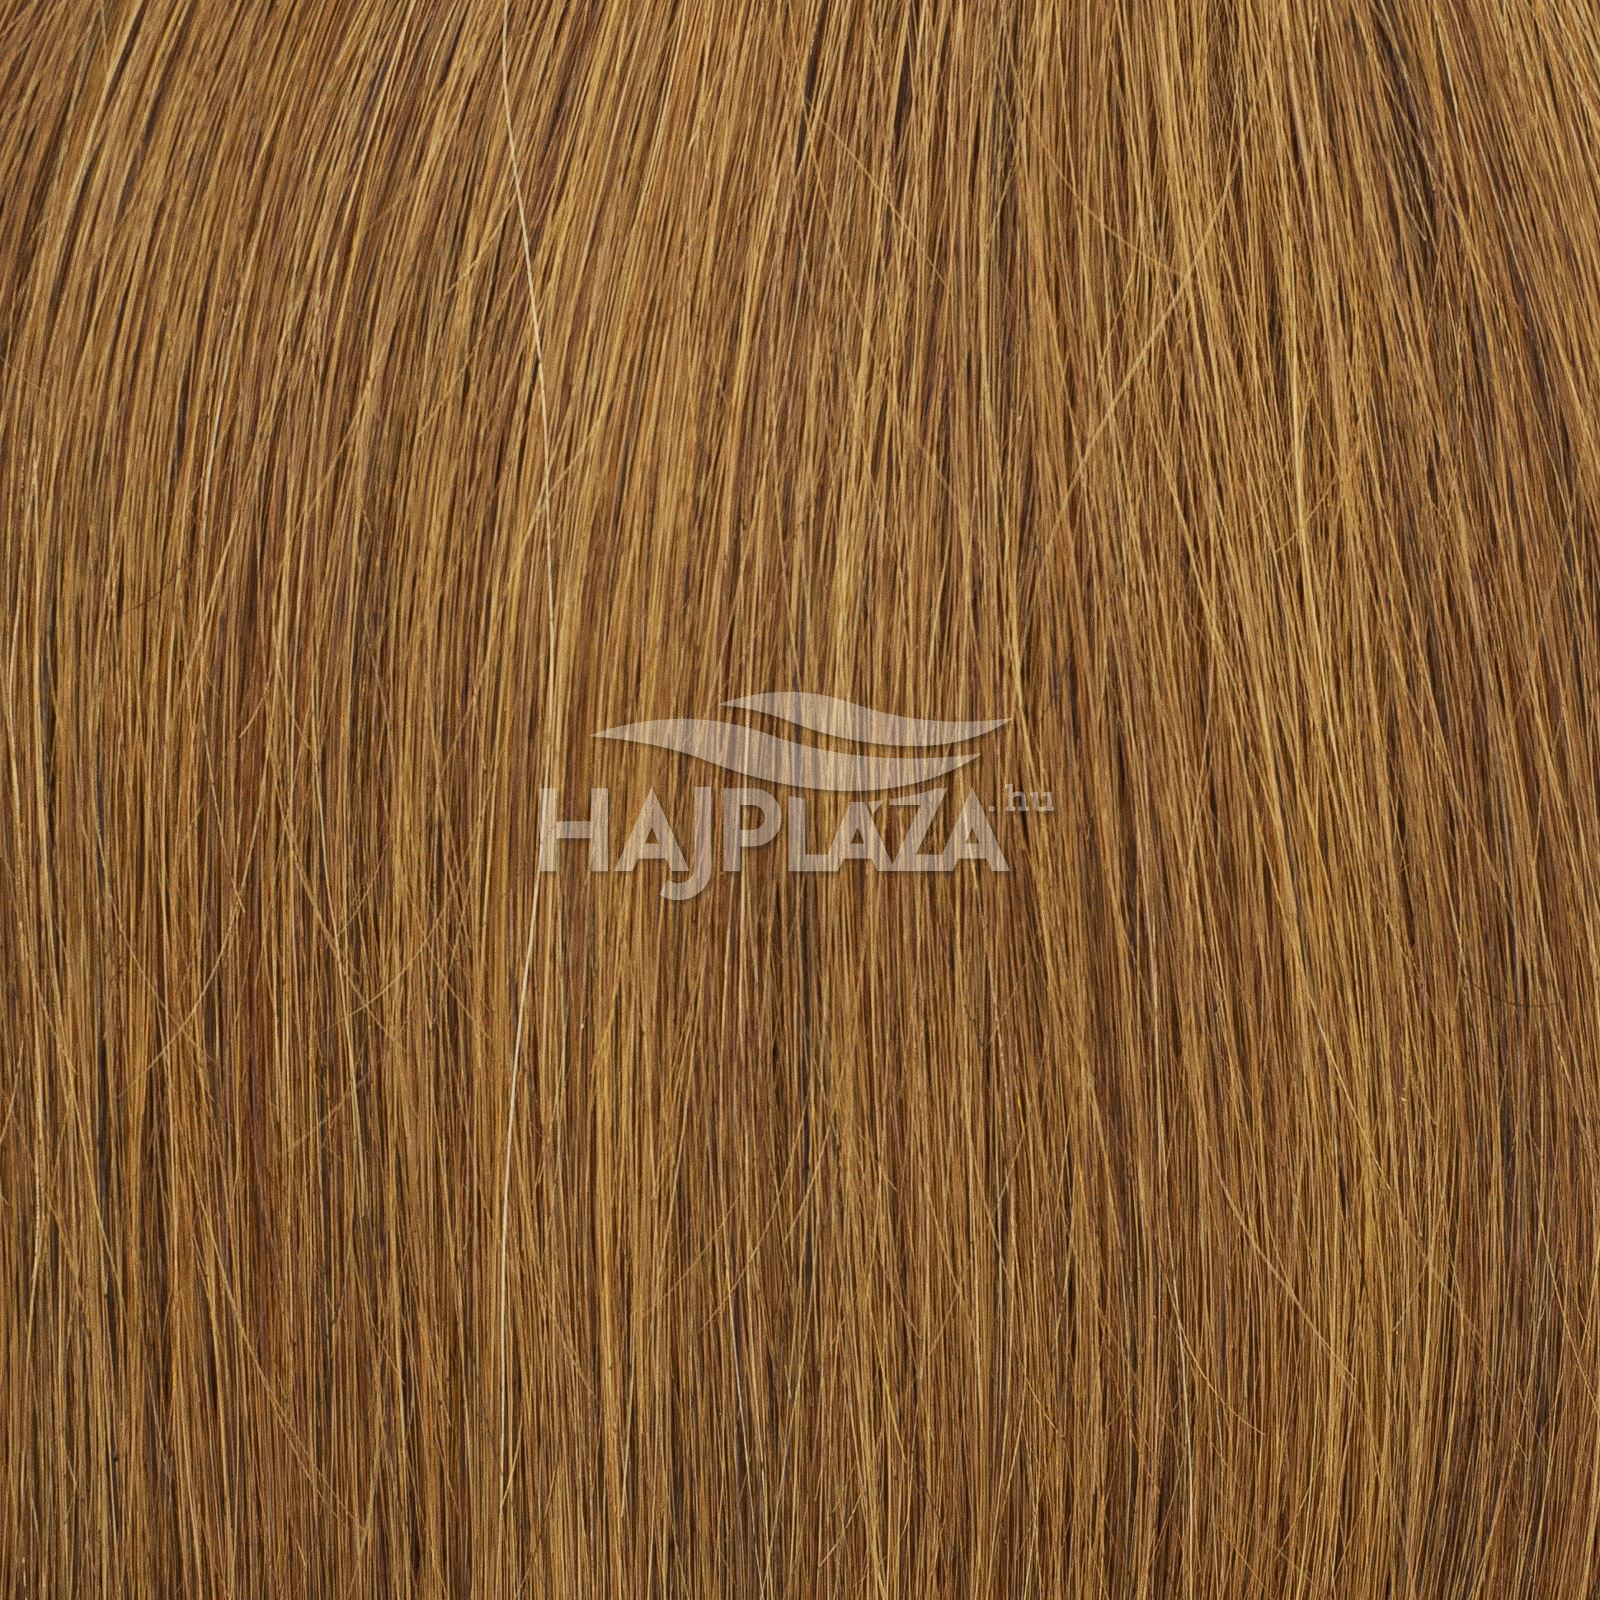 Festett középbarna keratinos haj - 40-45 cm